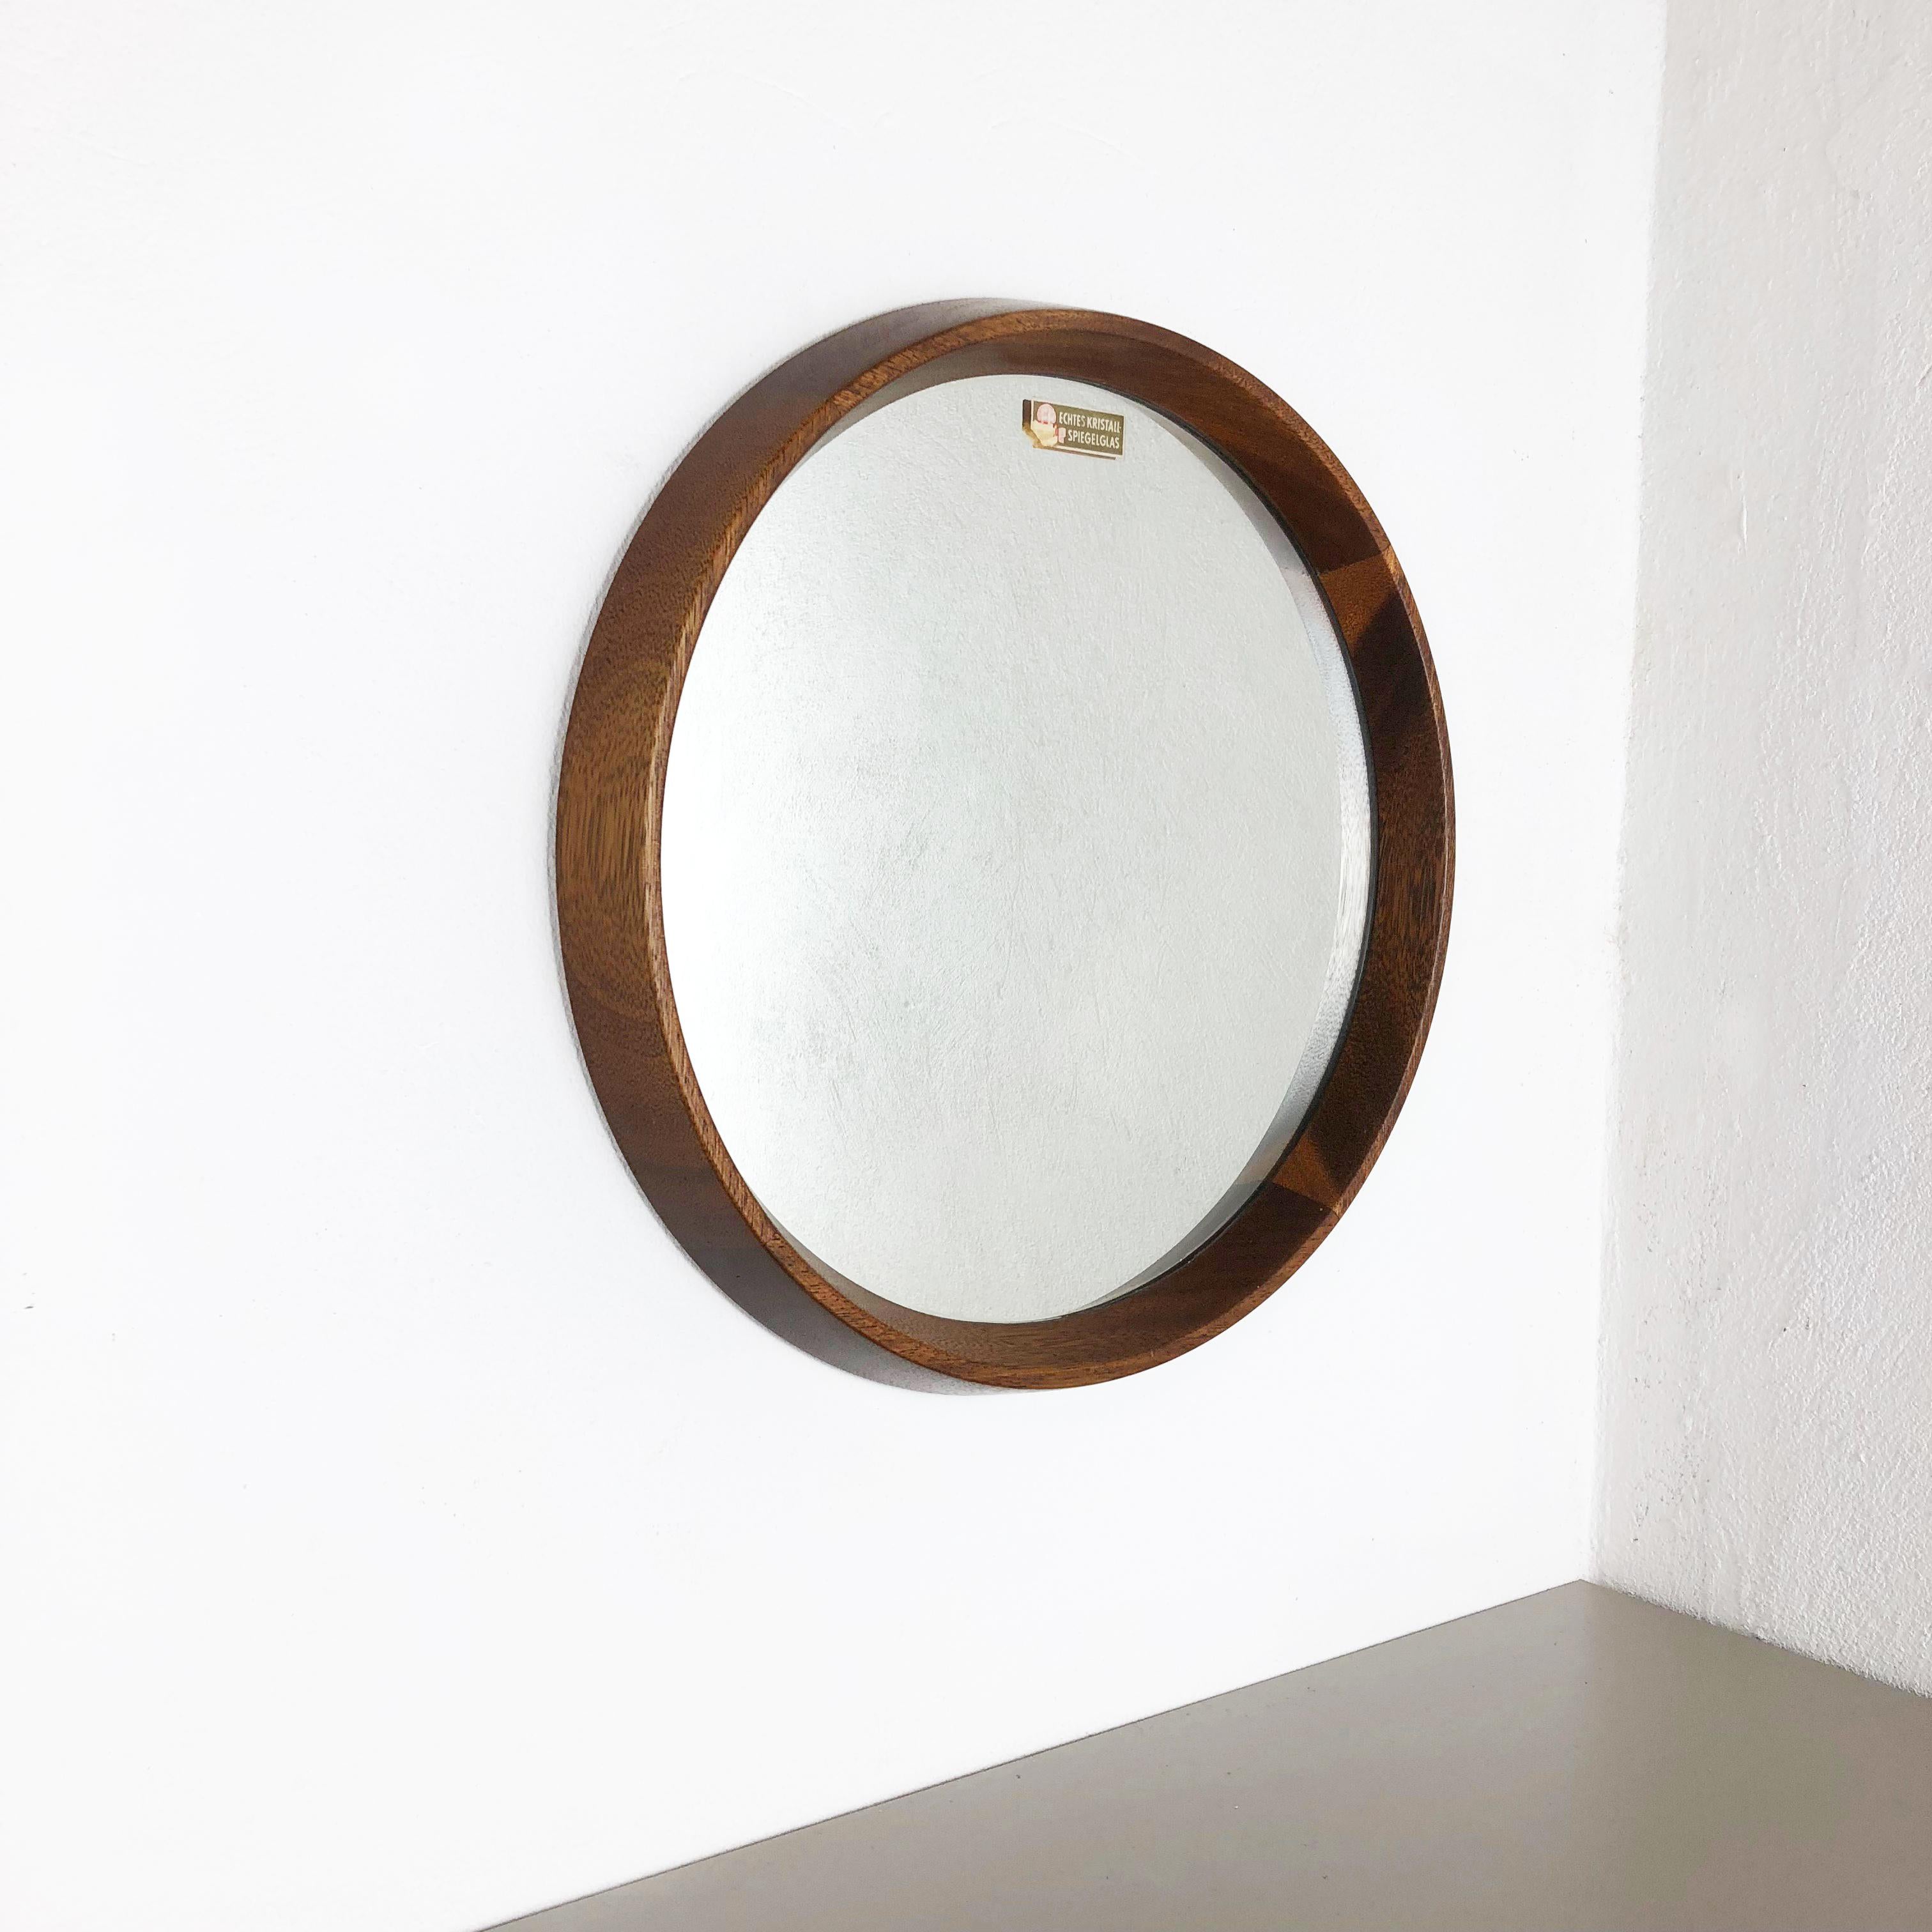 Article :

Miroir en bois massif nouveau vieux stock !


Origine :

Allemagne


AGE :

1960s




Ce miroir vintage original en bois massif a été produit dans les années 1960 en Allemagne. Il s'agit d'un nouveau stock ancien, il